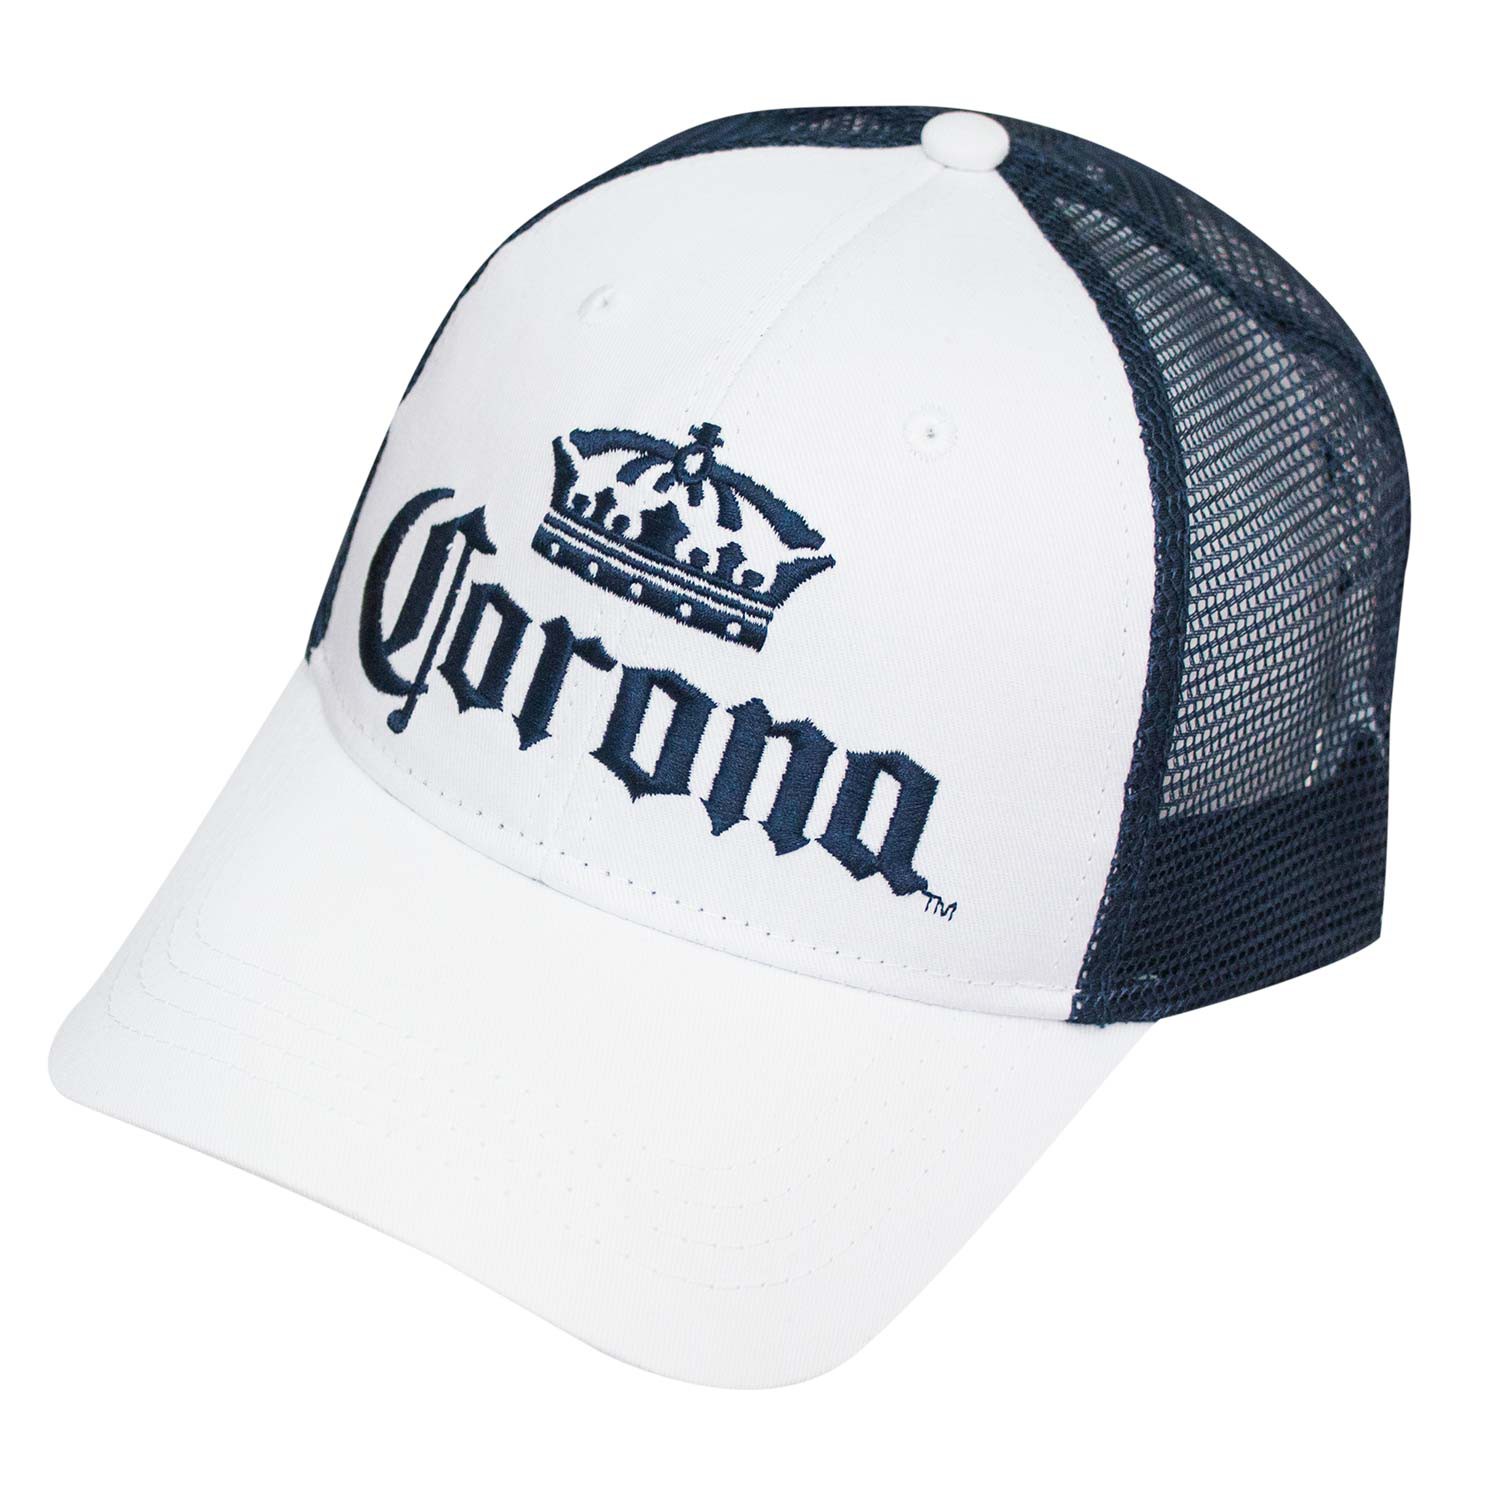 Corona Extra Blue & White Mesh Snapback Hat